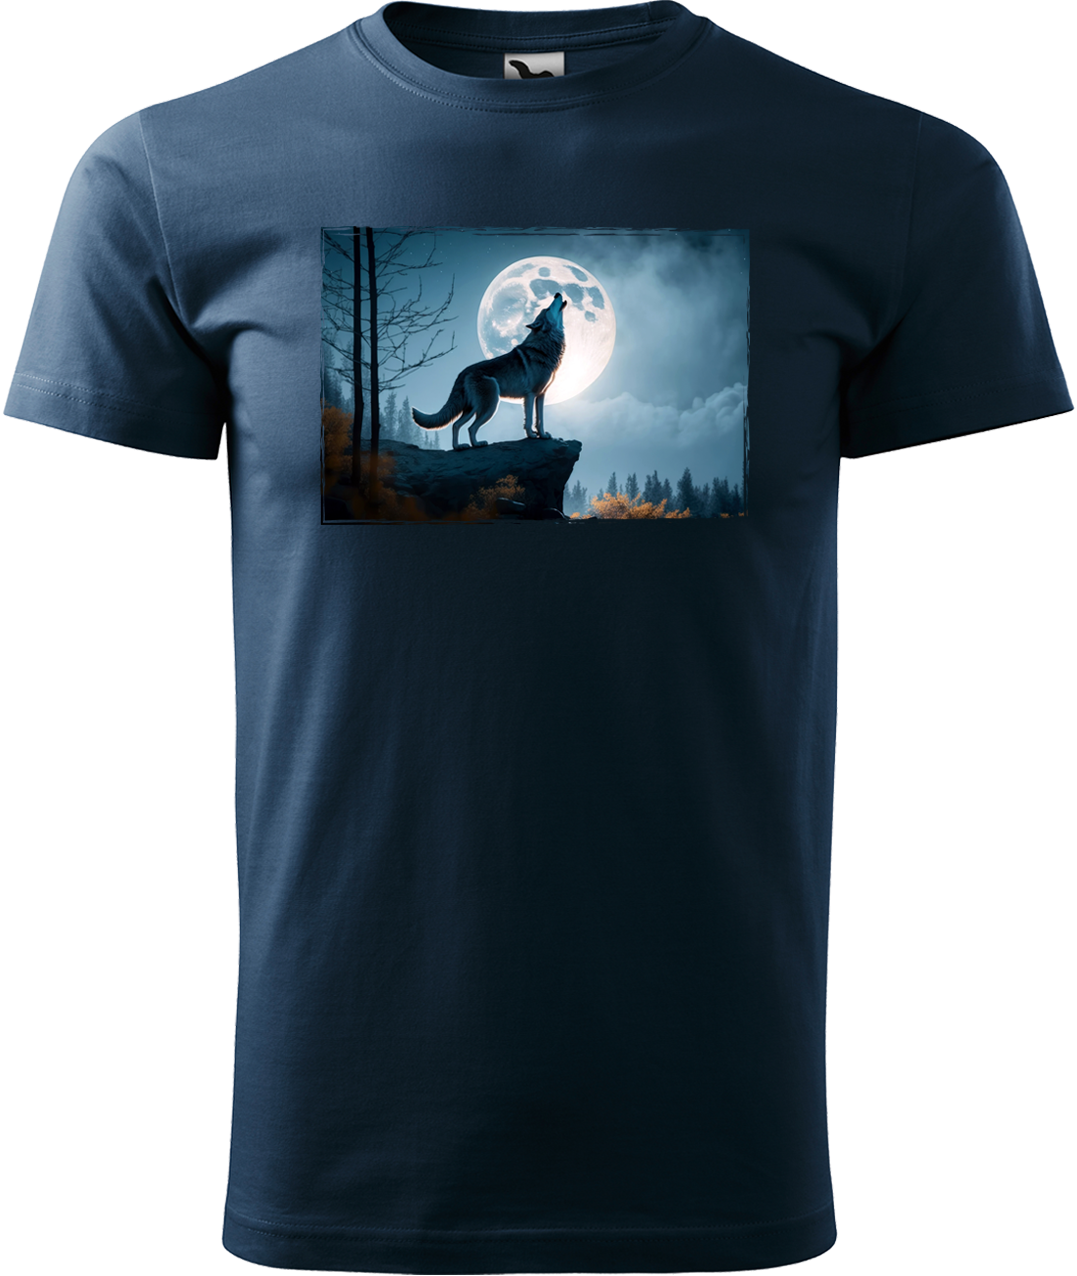 Pánské tričko s vlkem - Vyjící vlk Velikost: XL, Barva: Námořní modrá (02)